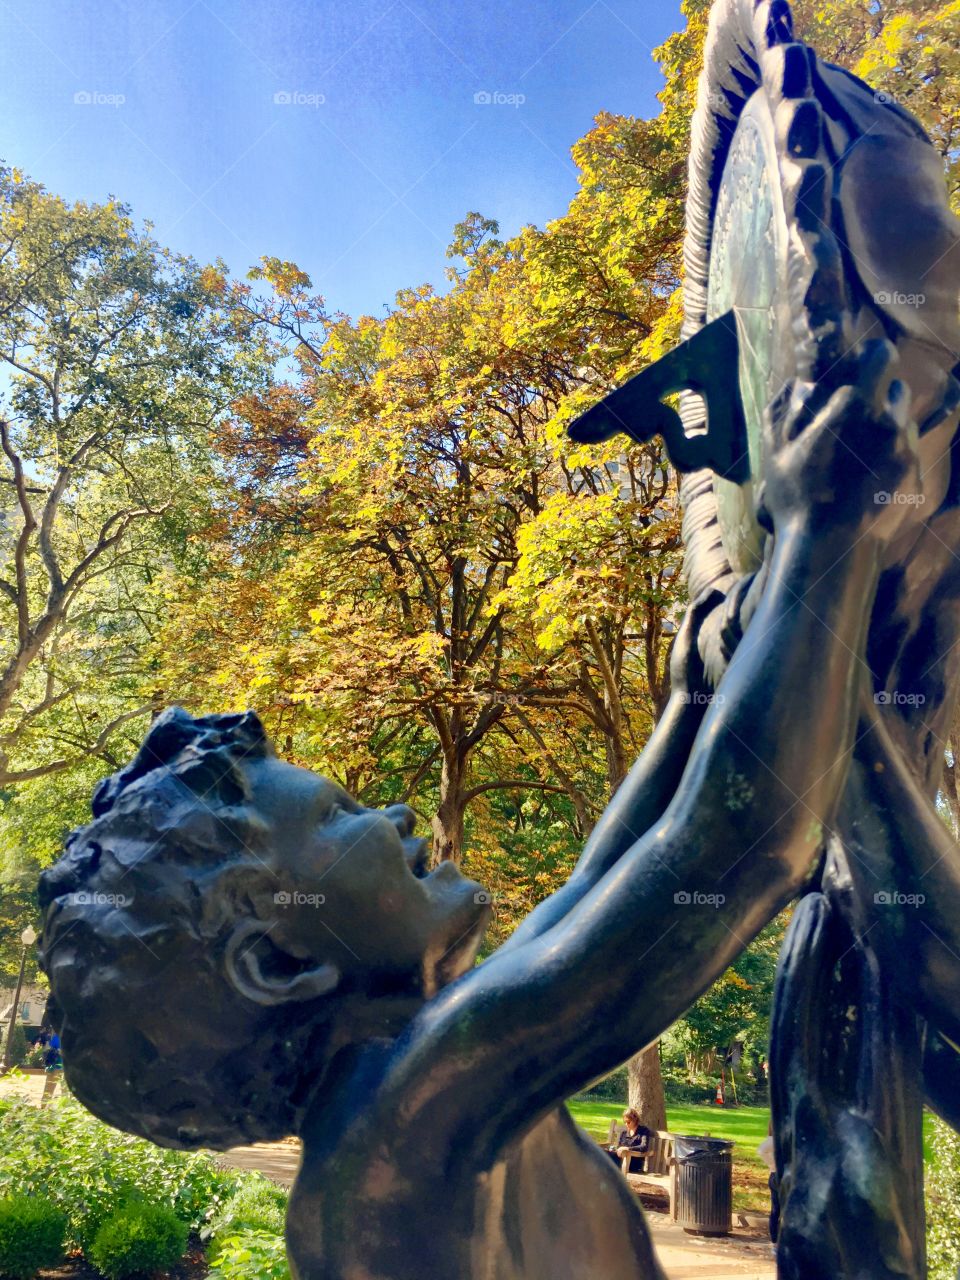 Friendship Abides sculpture, Rittenhouse Square Park